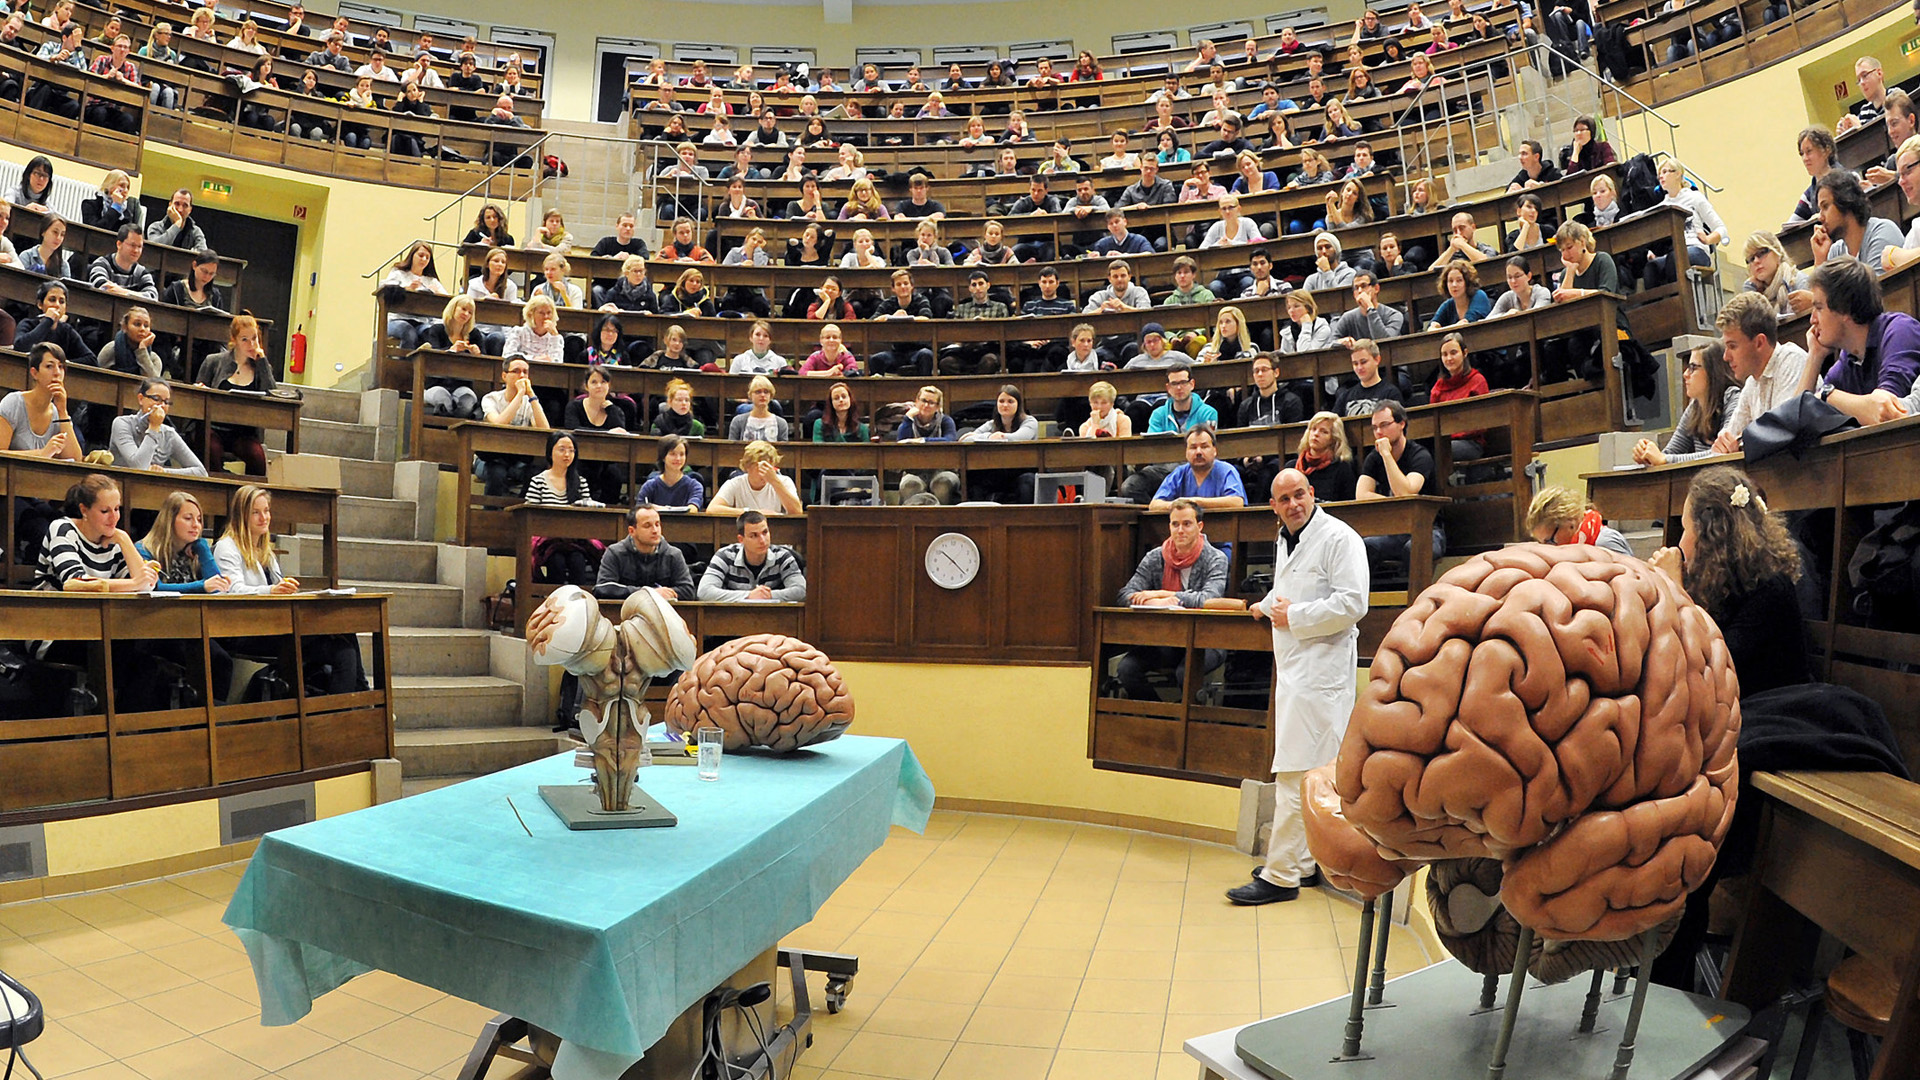 Studenten der Human- und Zahnmedizin hören im historischen Hörsaal am Institut für Anatomie der Universität in Leipzig eine Vorlesung zu Neuroanatomie. | Bildquelle: dpa